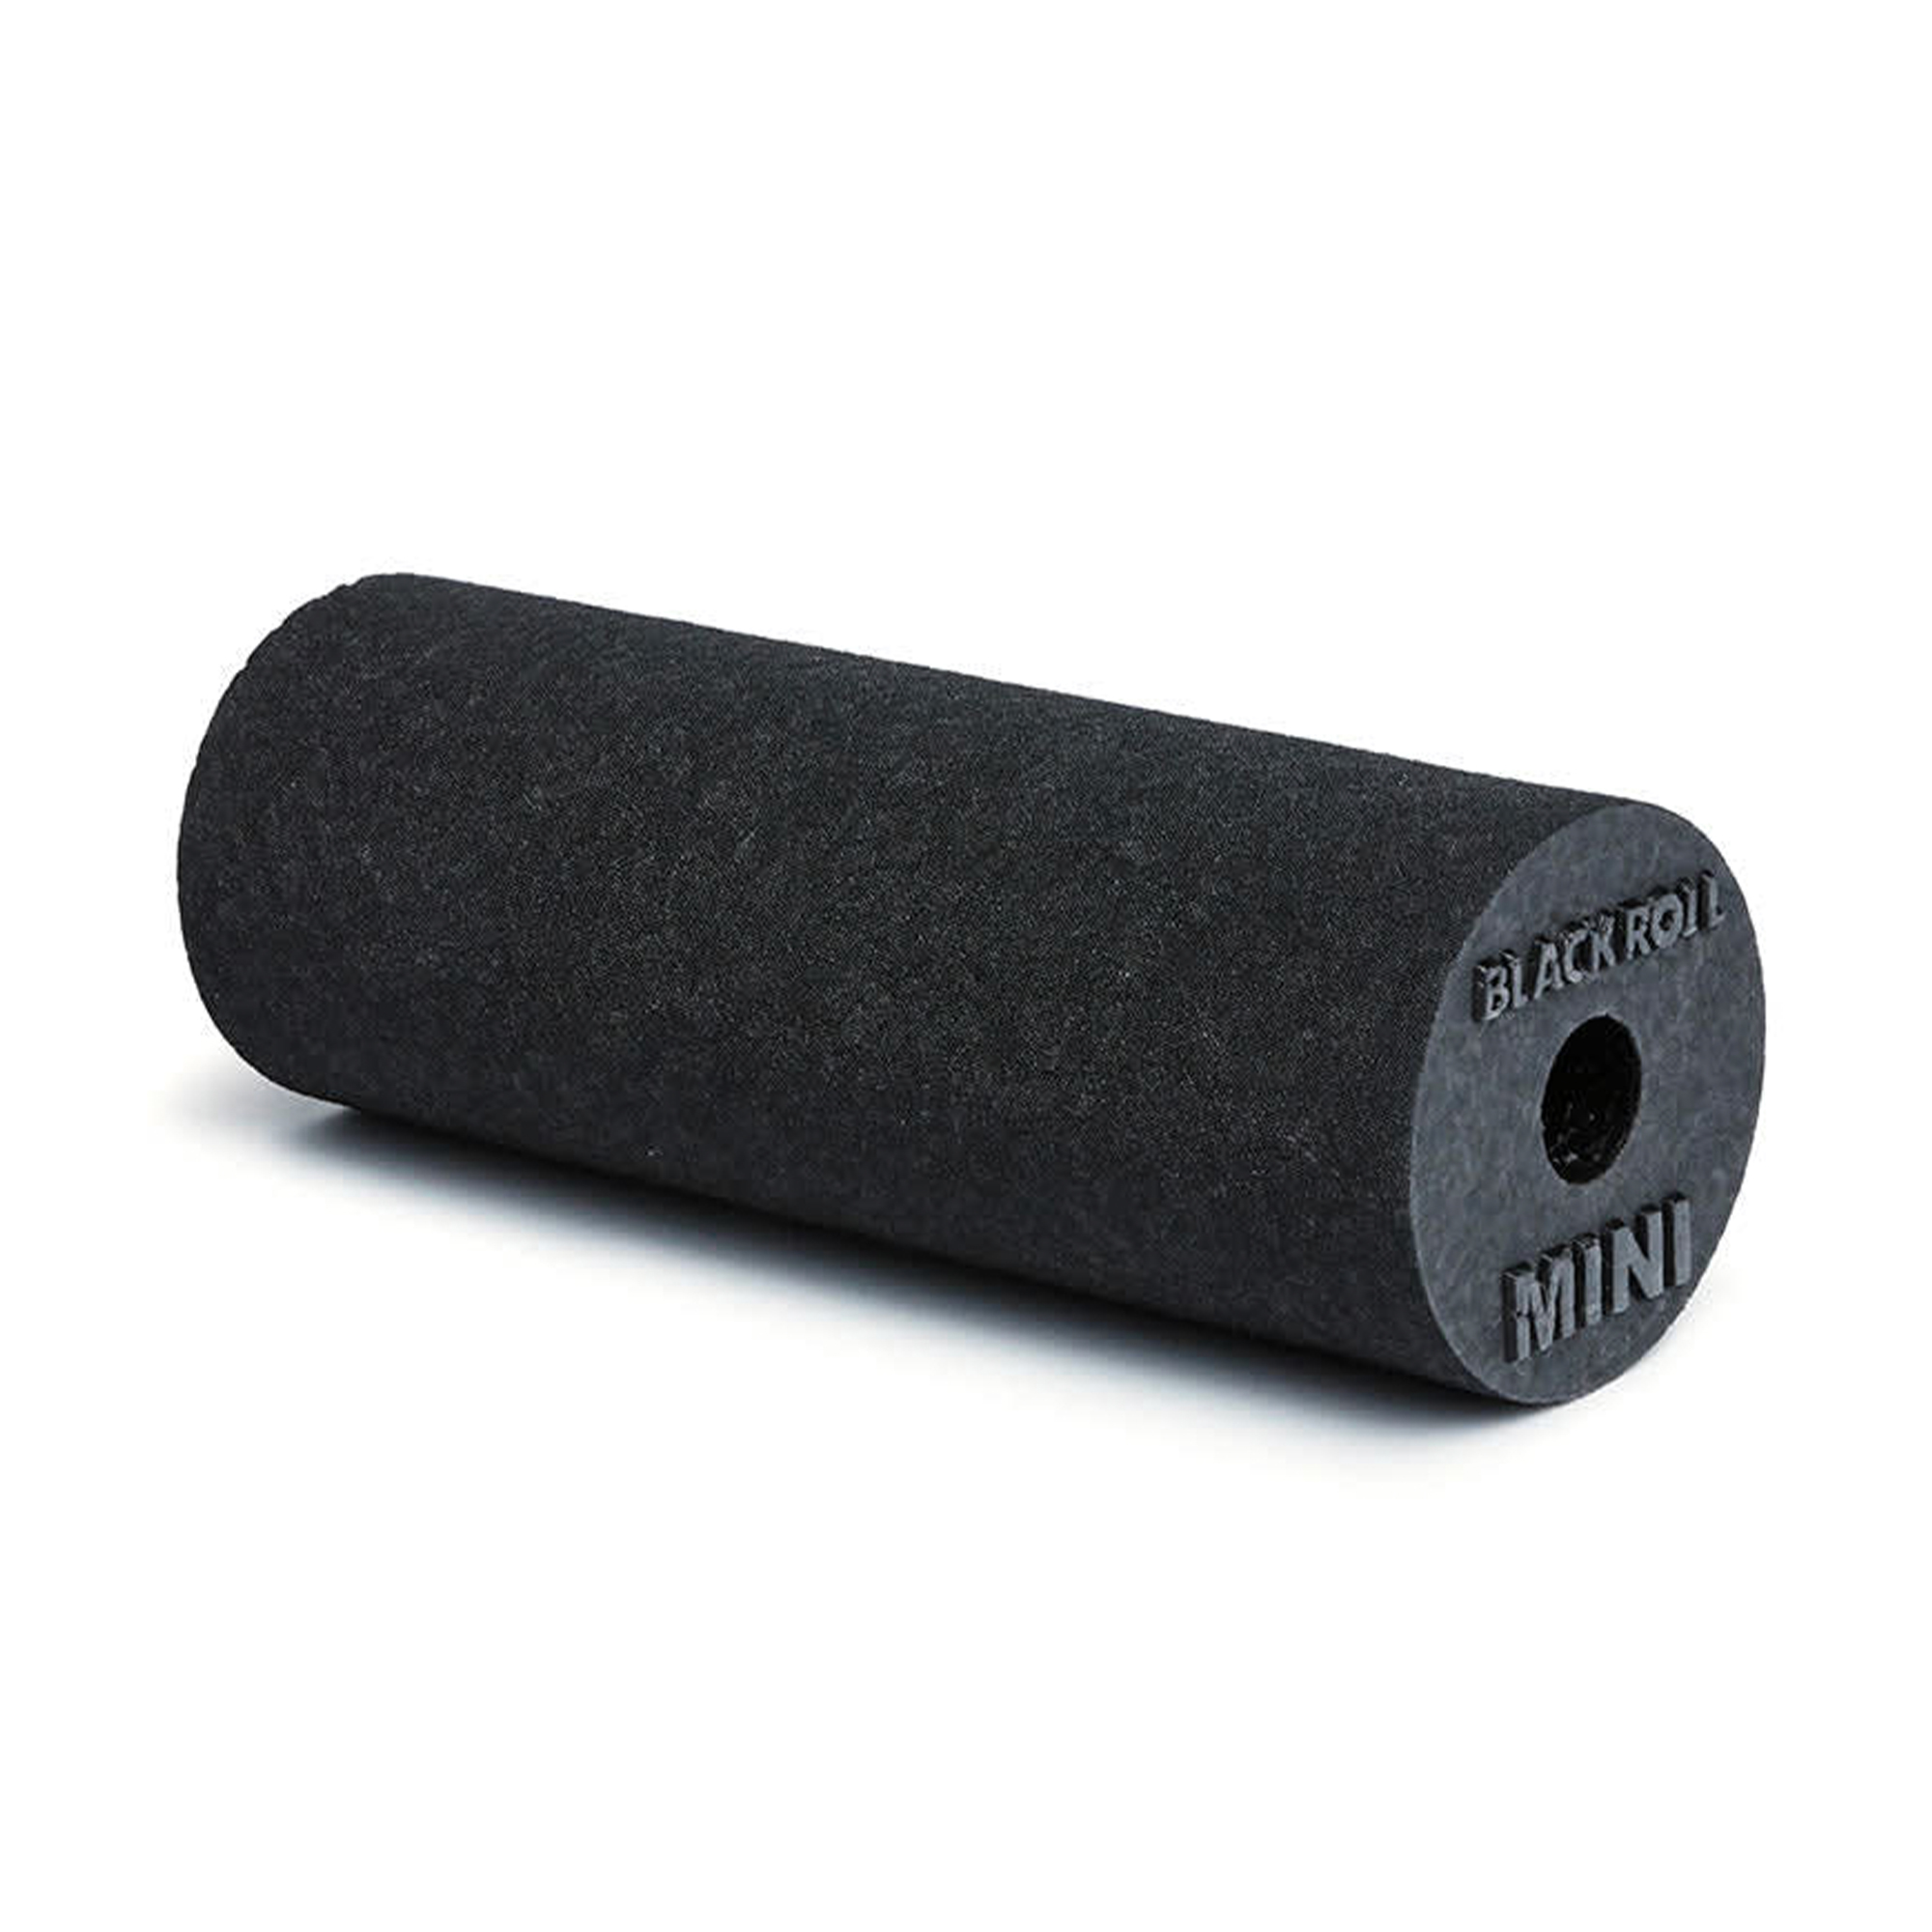 Blackroll Mini Foam Roller Sort - 15 x 6 cm